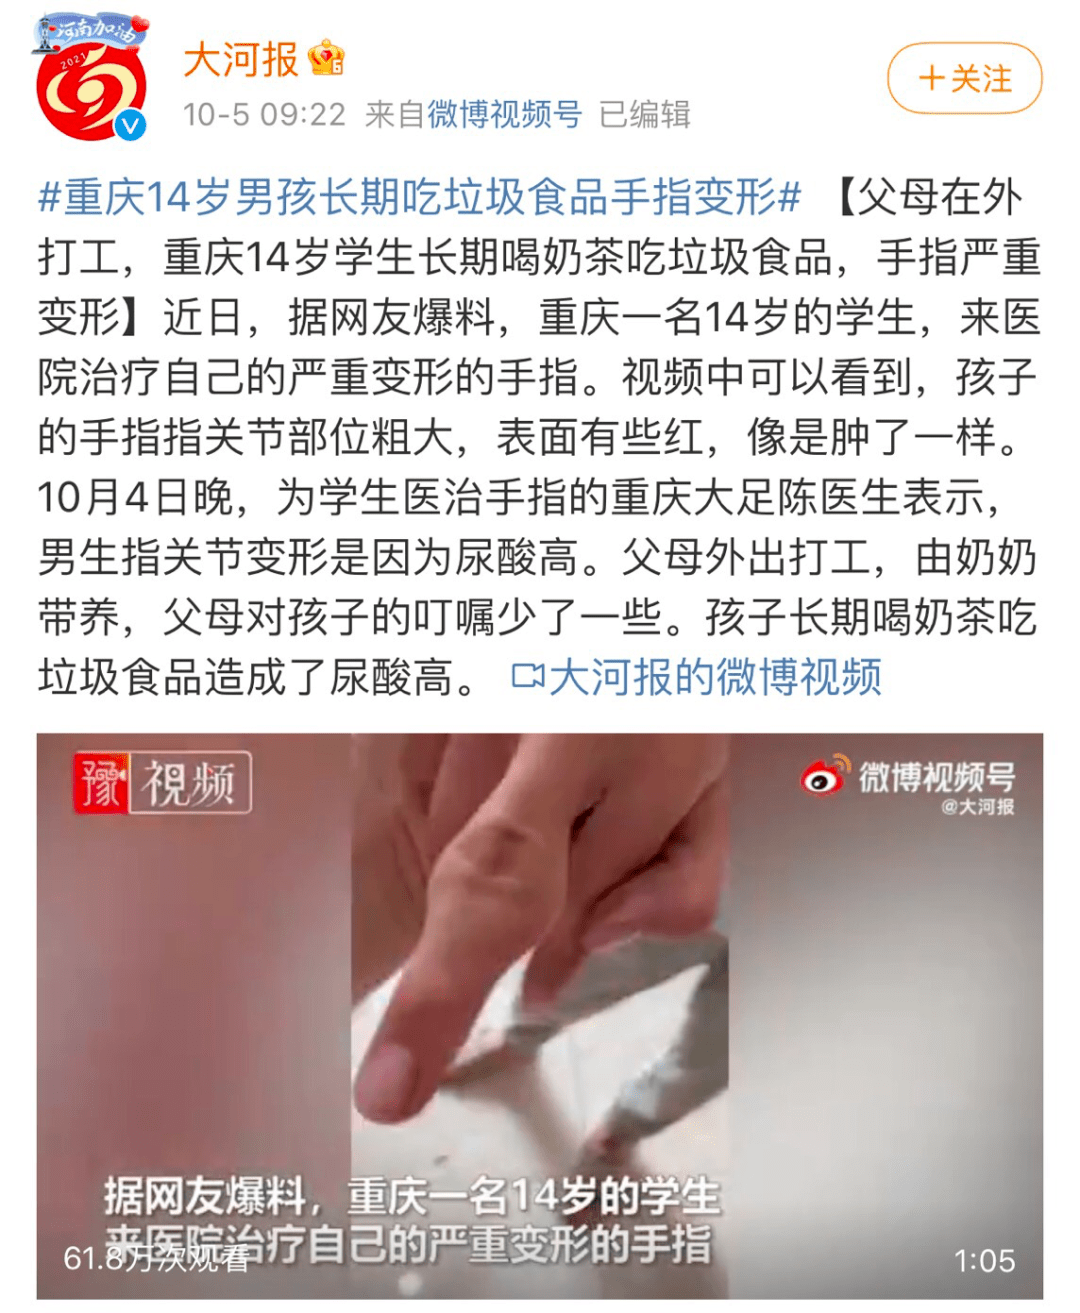 新闻报道了一个重庆14岁男孩,因为长期吃垃圾食品手指已经严重变形